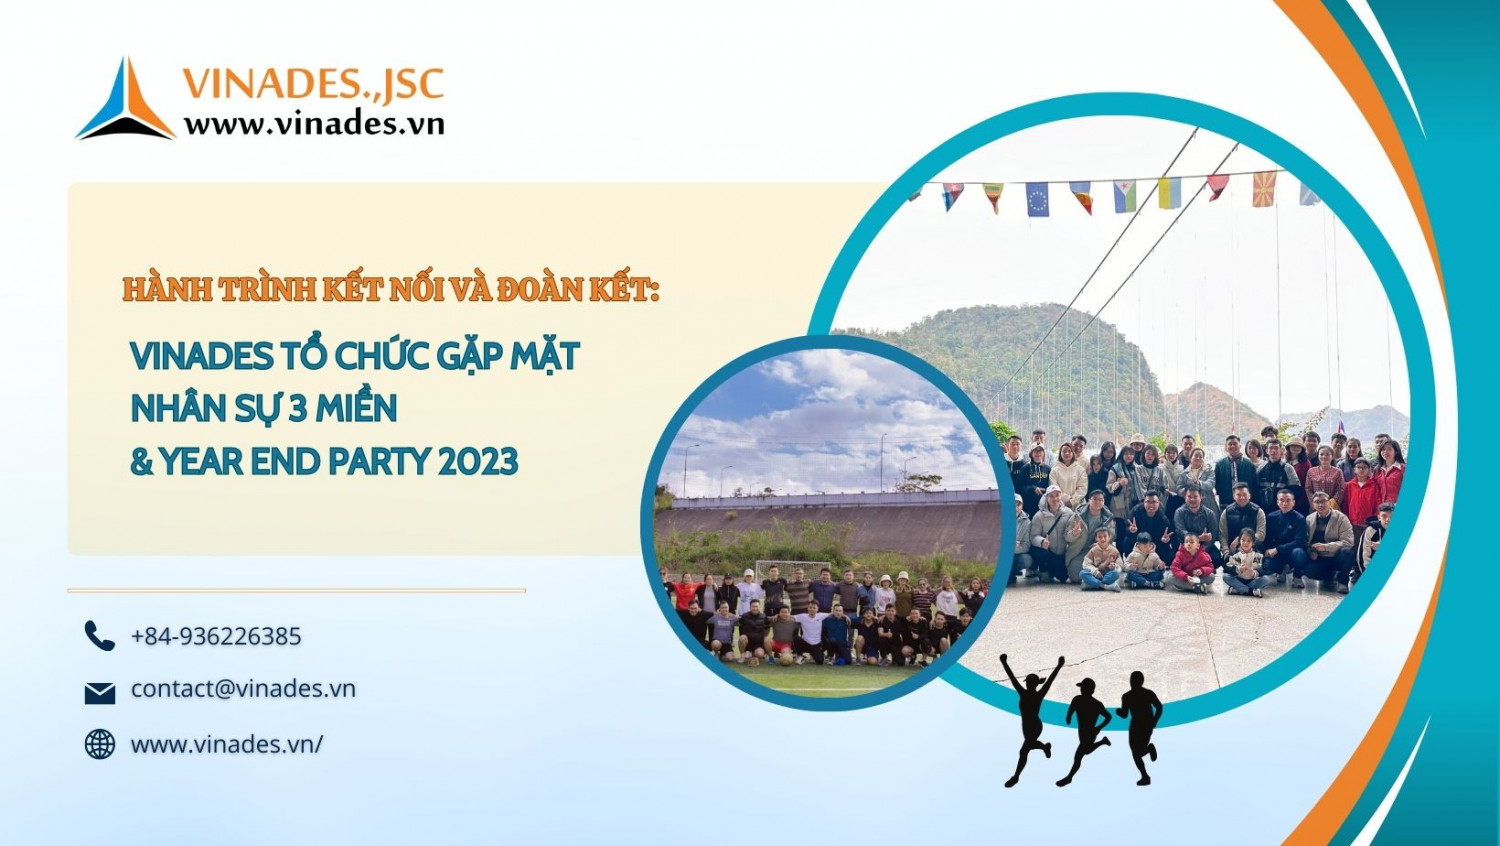 Hành trình kết nối và đoàn kết VINADES tổ chức gặp mặt nhân sự 3 miền & Year End Party 2023 tại Mộc Châu